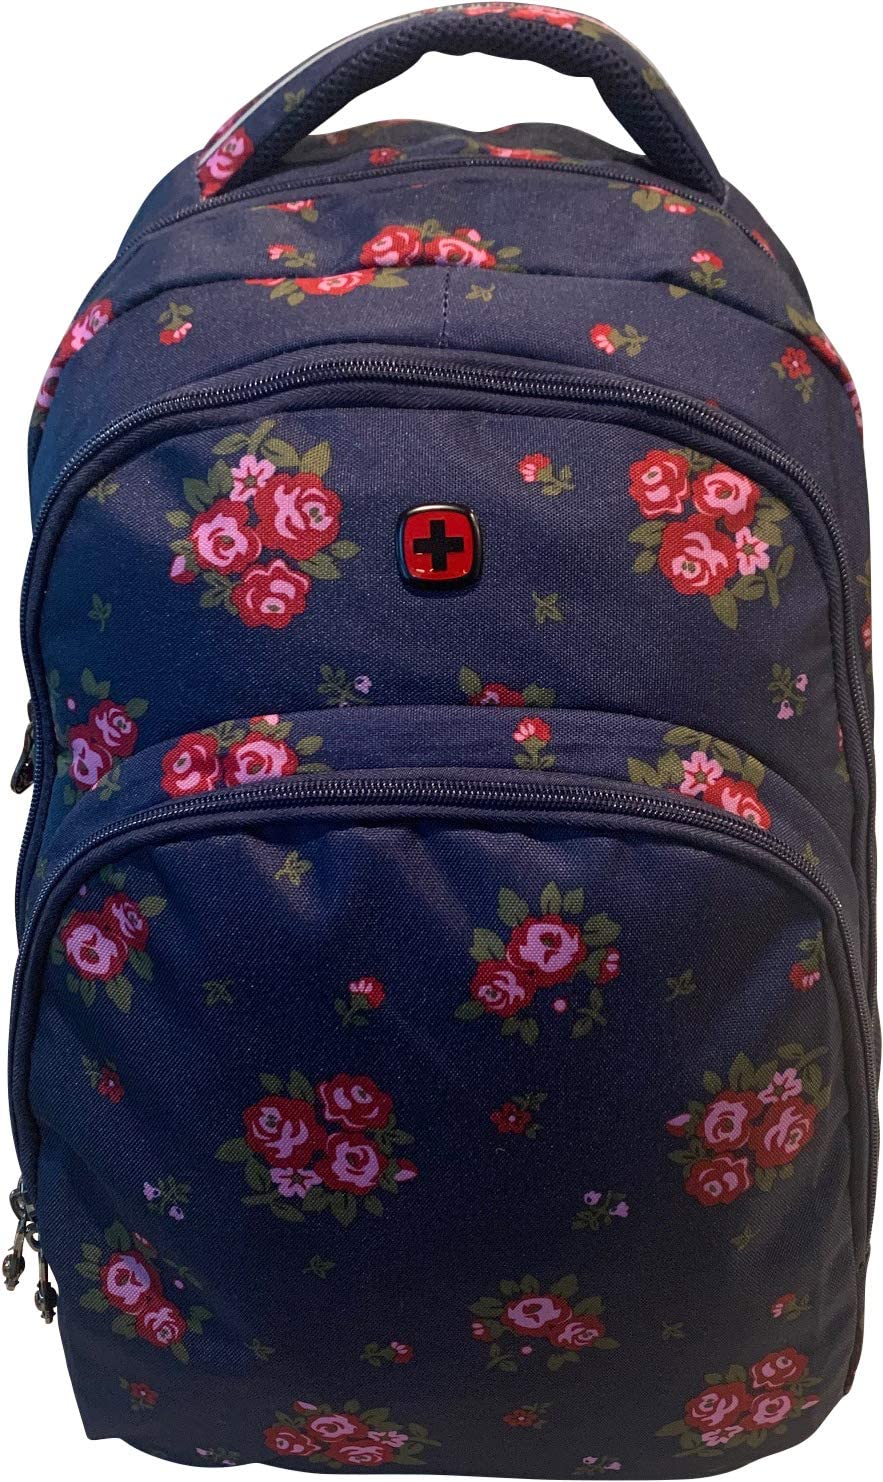 Wenger Upload Backpack With 16" Laptop Pocket And Tablet Pocket, Navy Floral Print